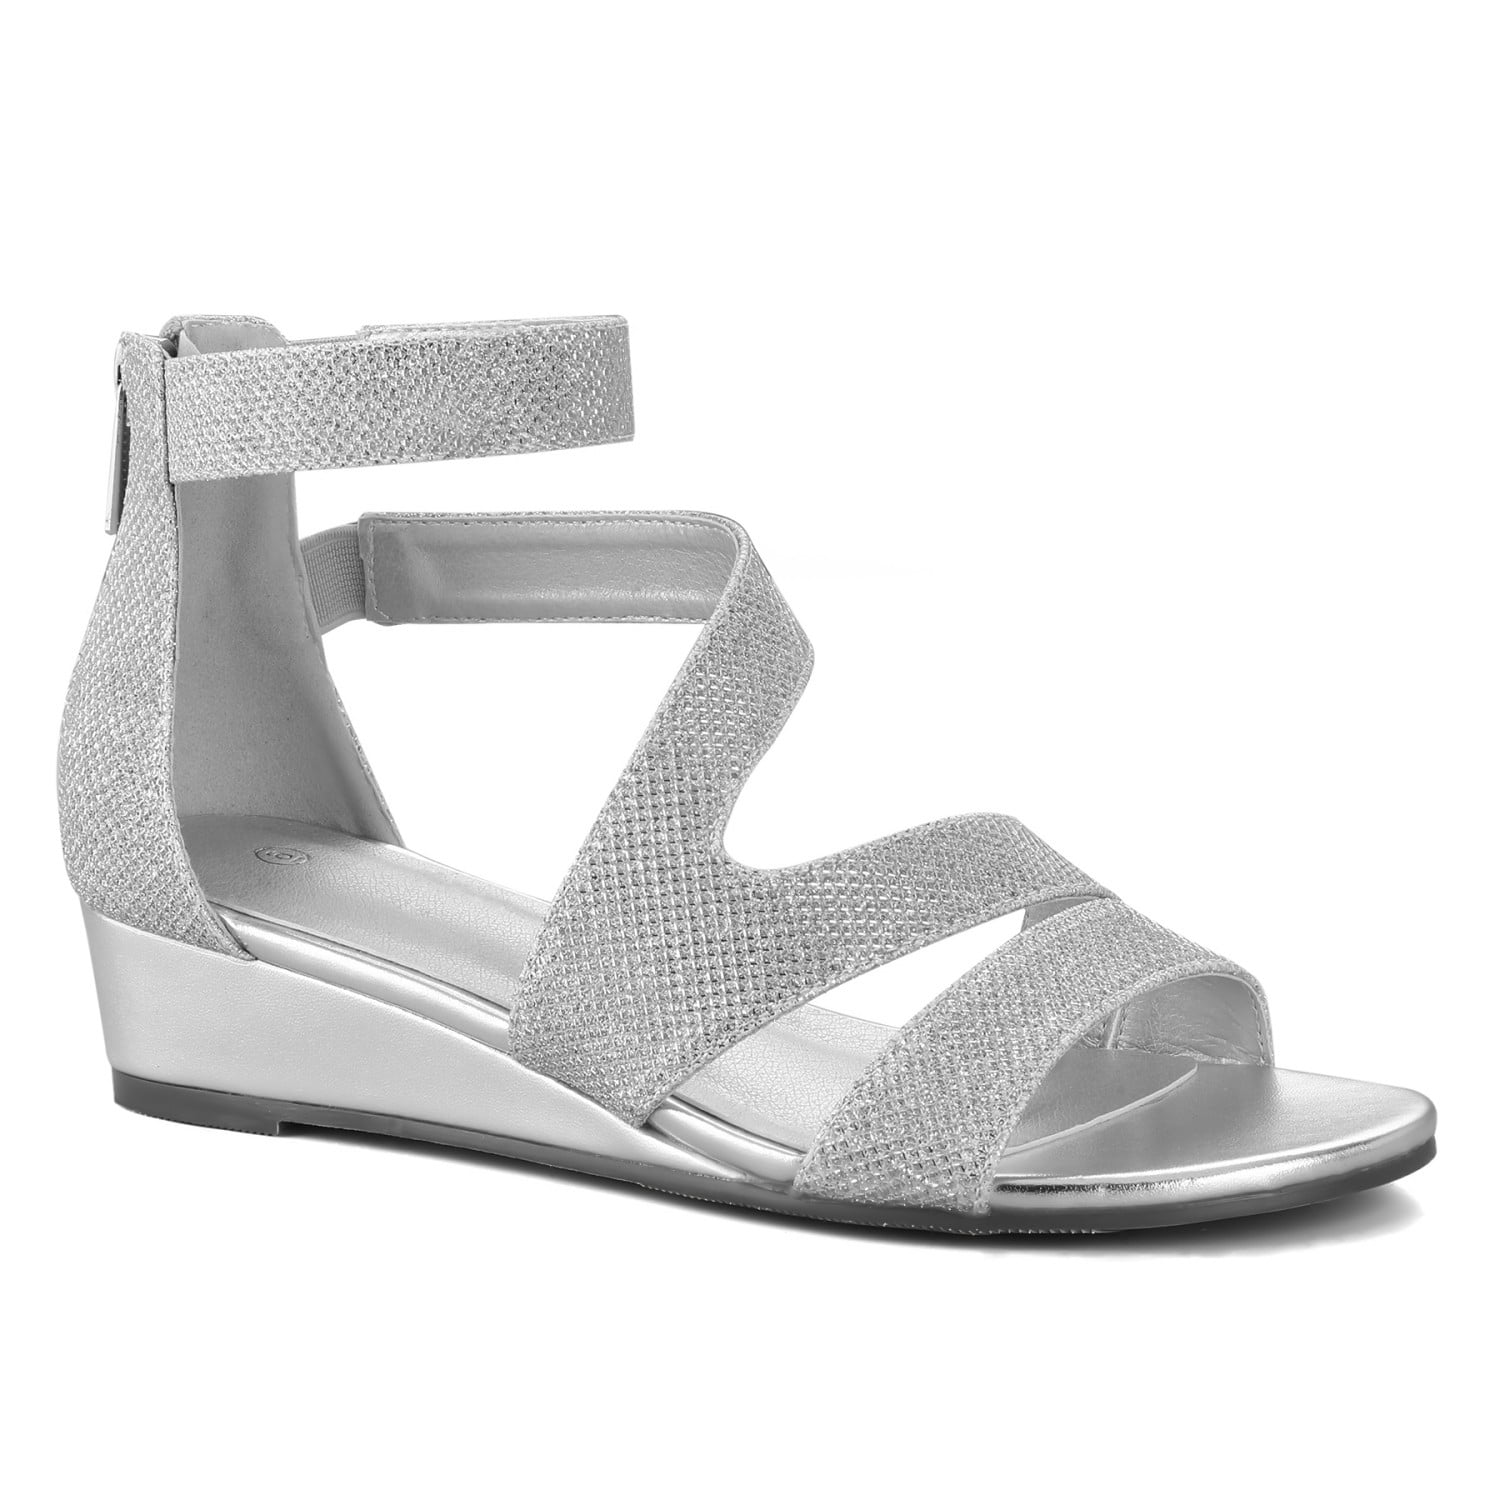 Mysoft Women's Silver Glitter Open Toe Shoes Ankle Strap Low Wedge ...